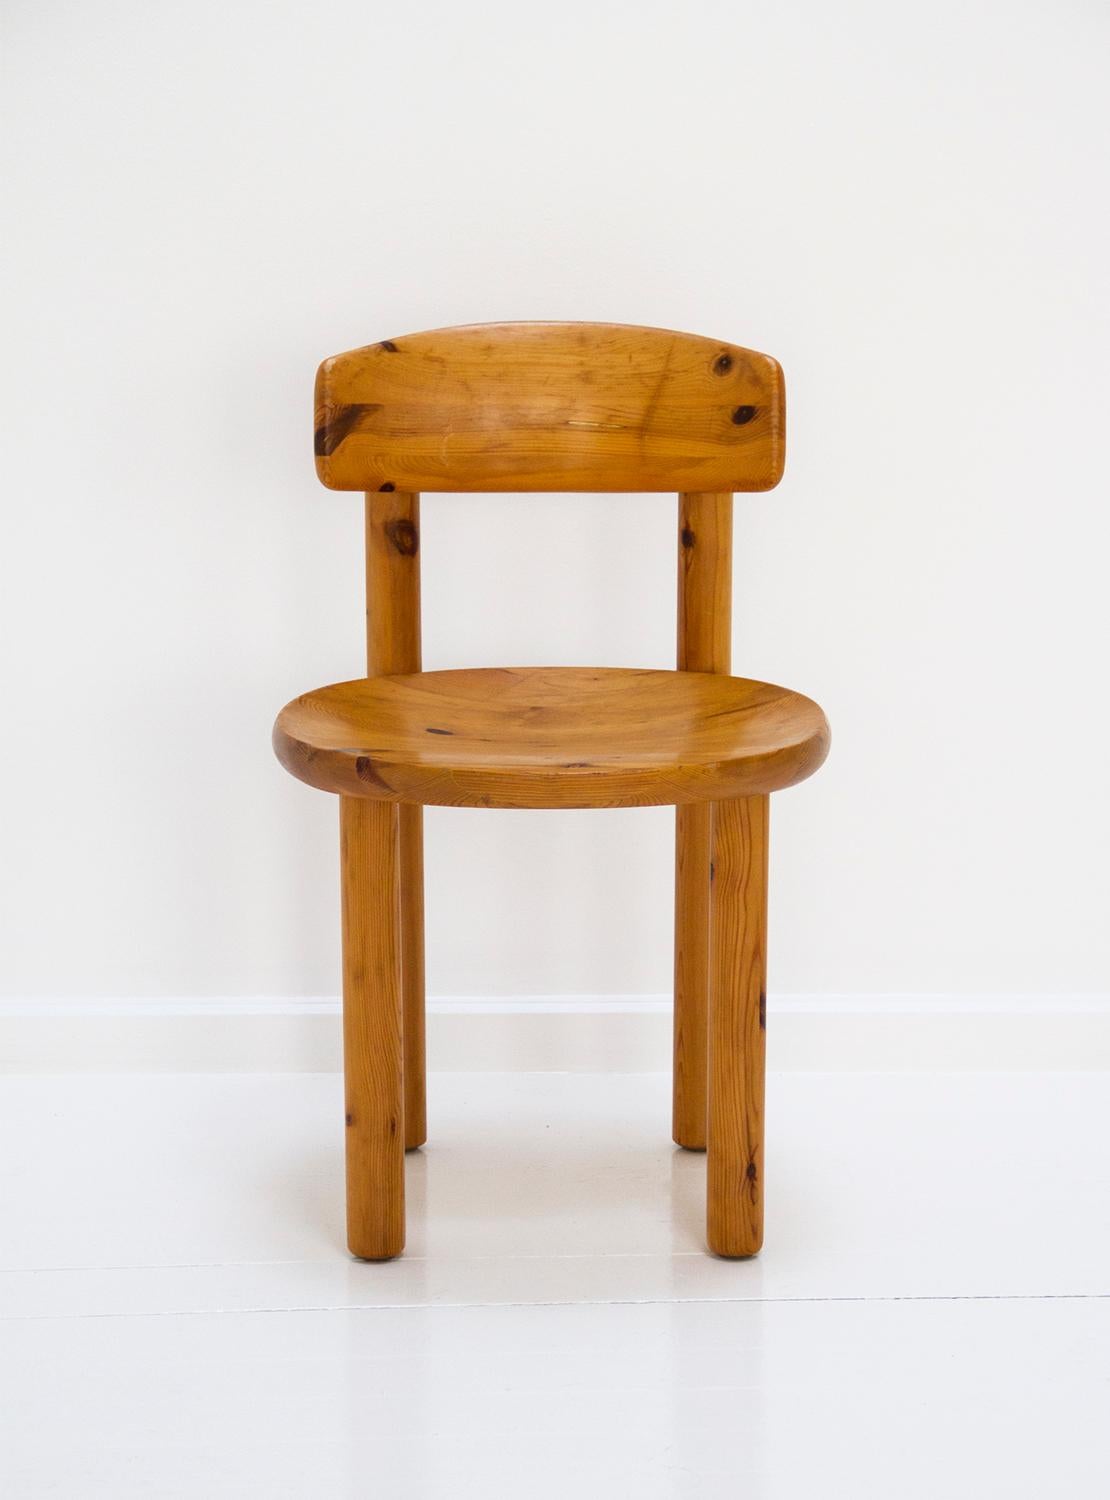 Set of 4 dining chairs by Rainer Daumiller.
Made of pine wood.
Designer: Rainer Daumiller
Manufacturer: Hirtshals Savvaerk
circa 1960, Denmark.
    